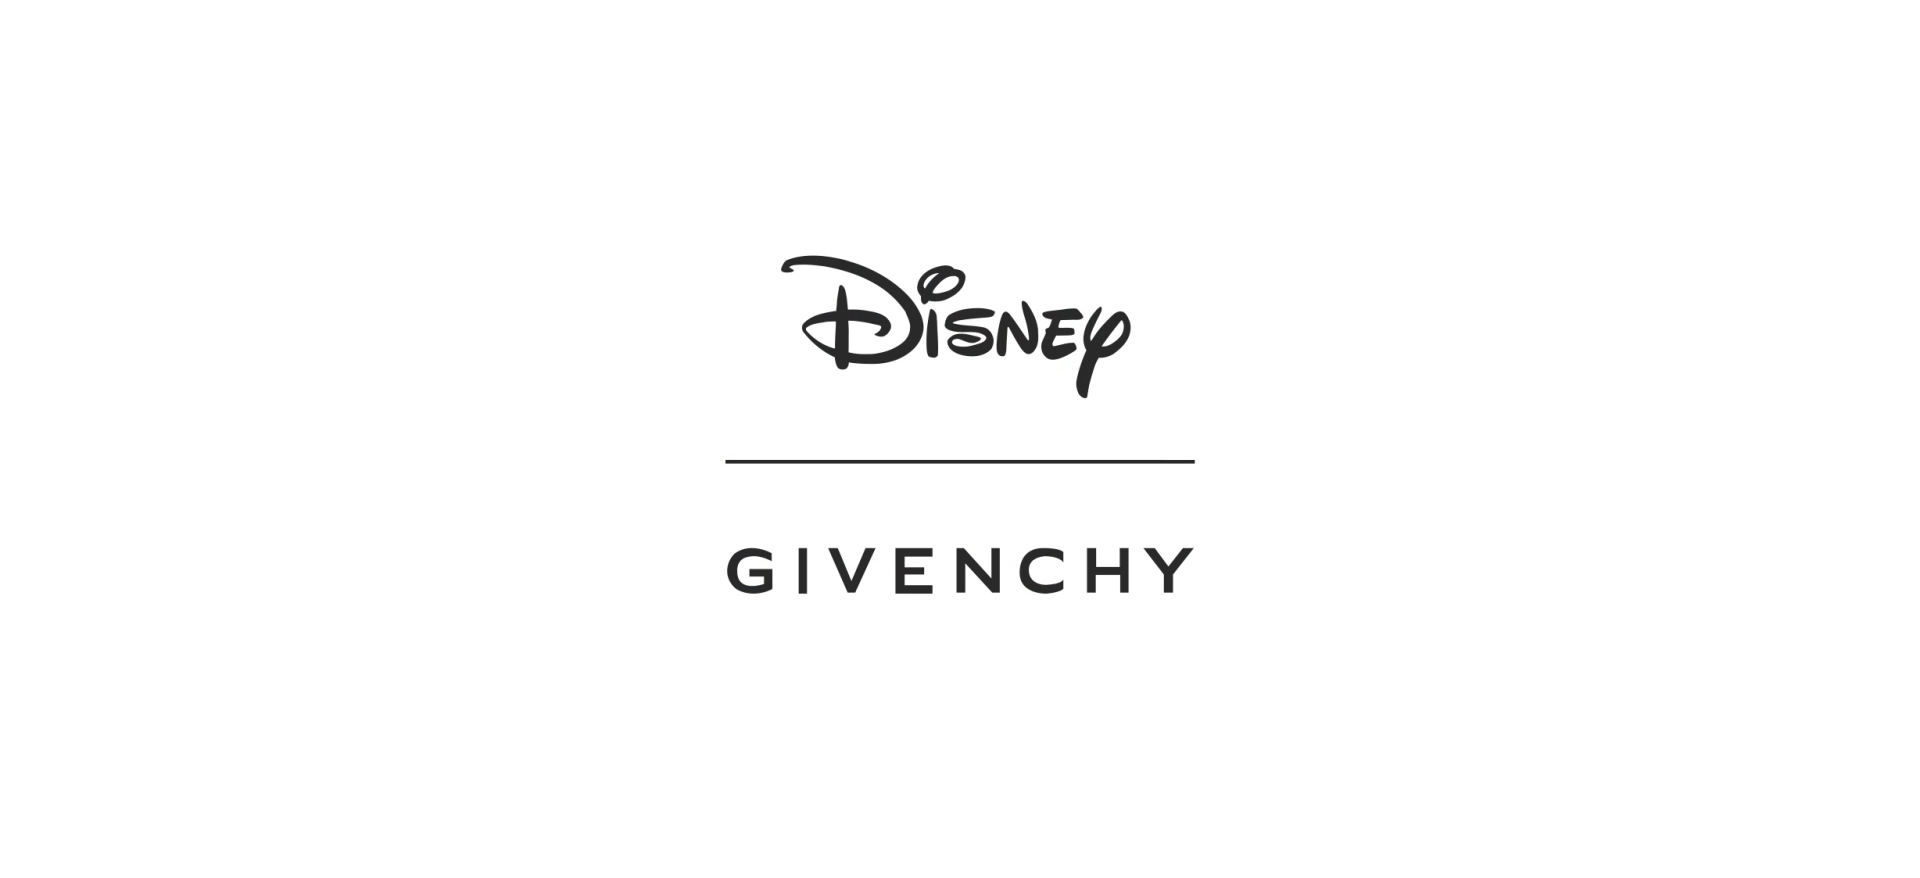 Disney inspire Givenchy et lance une collaboration avec la marque - Cultea